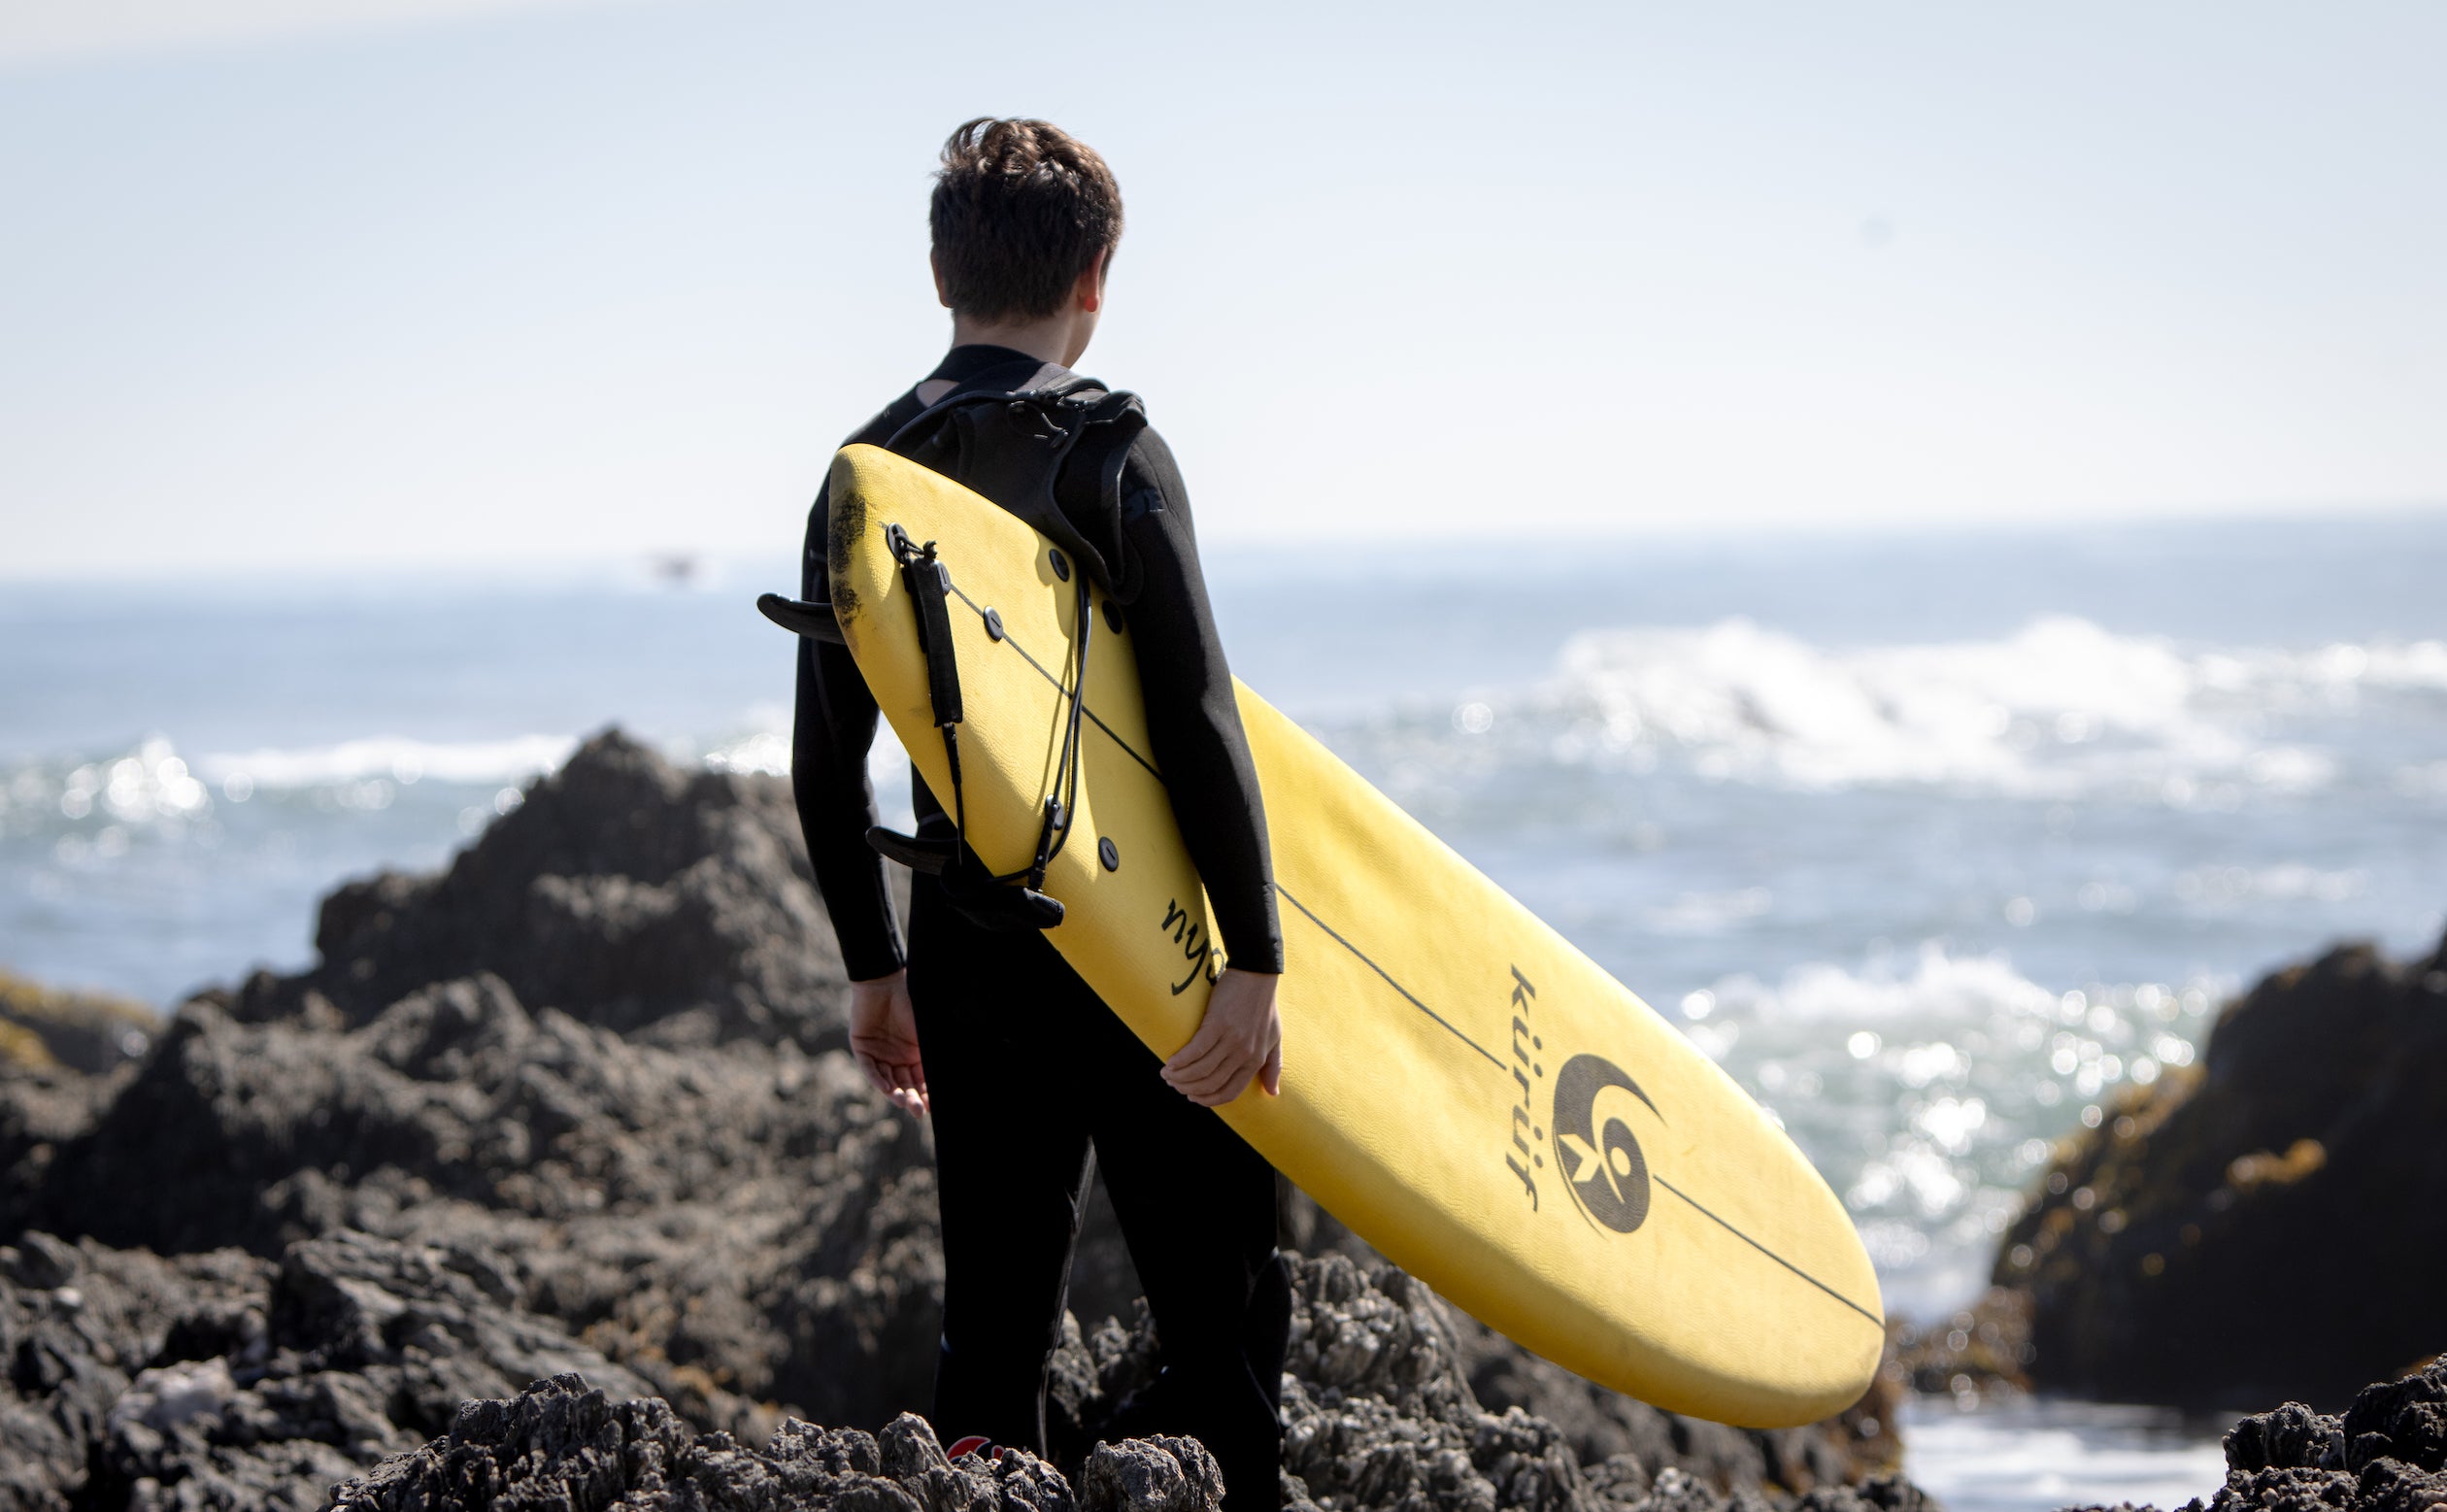 Diez consejos para mejorar tu surf